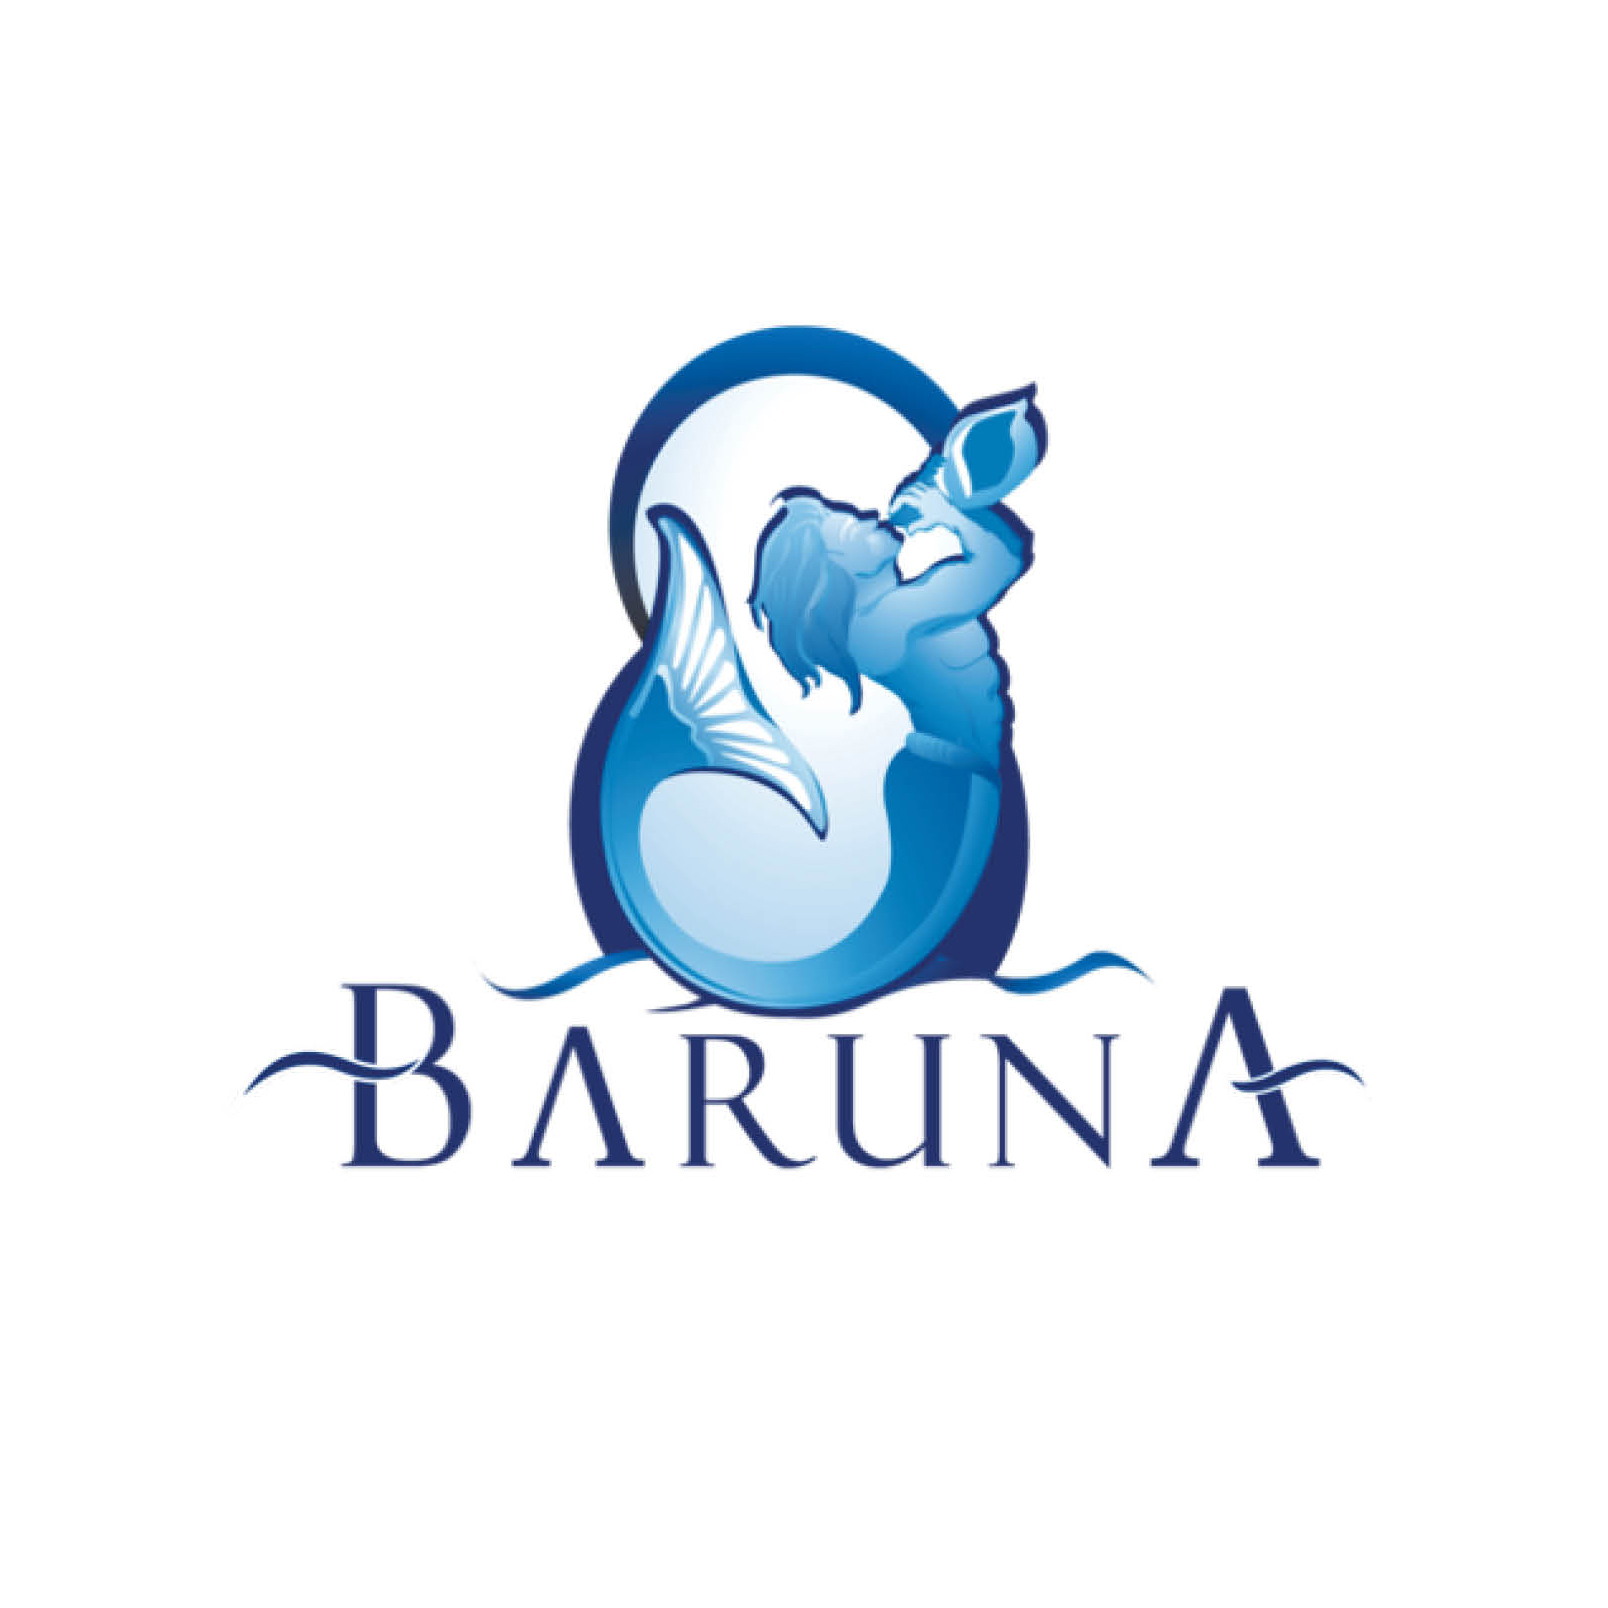 Baruna logo